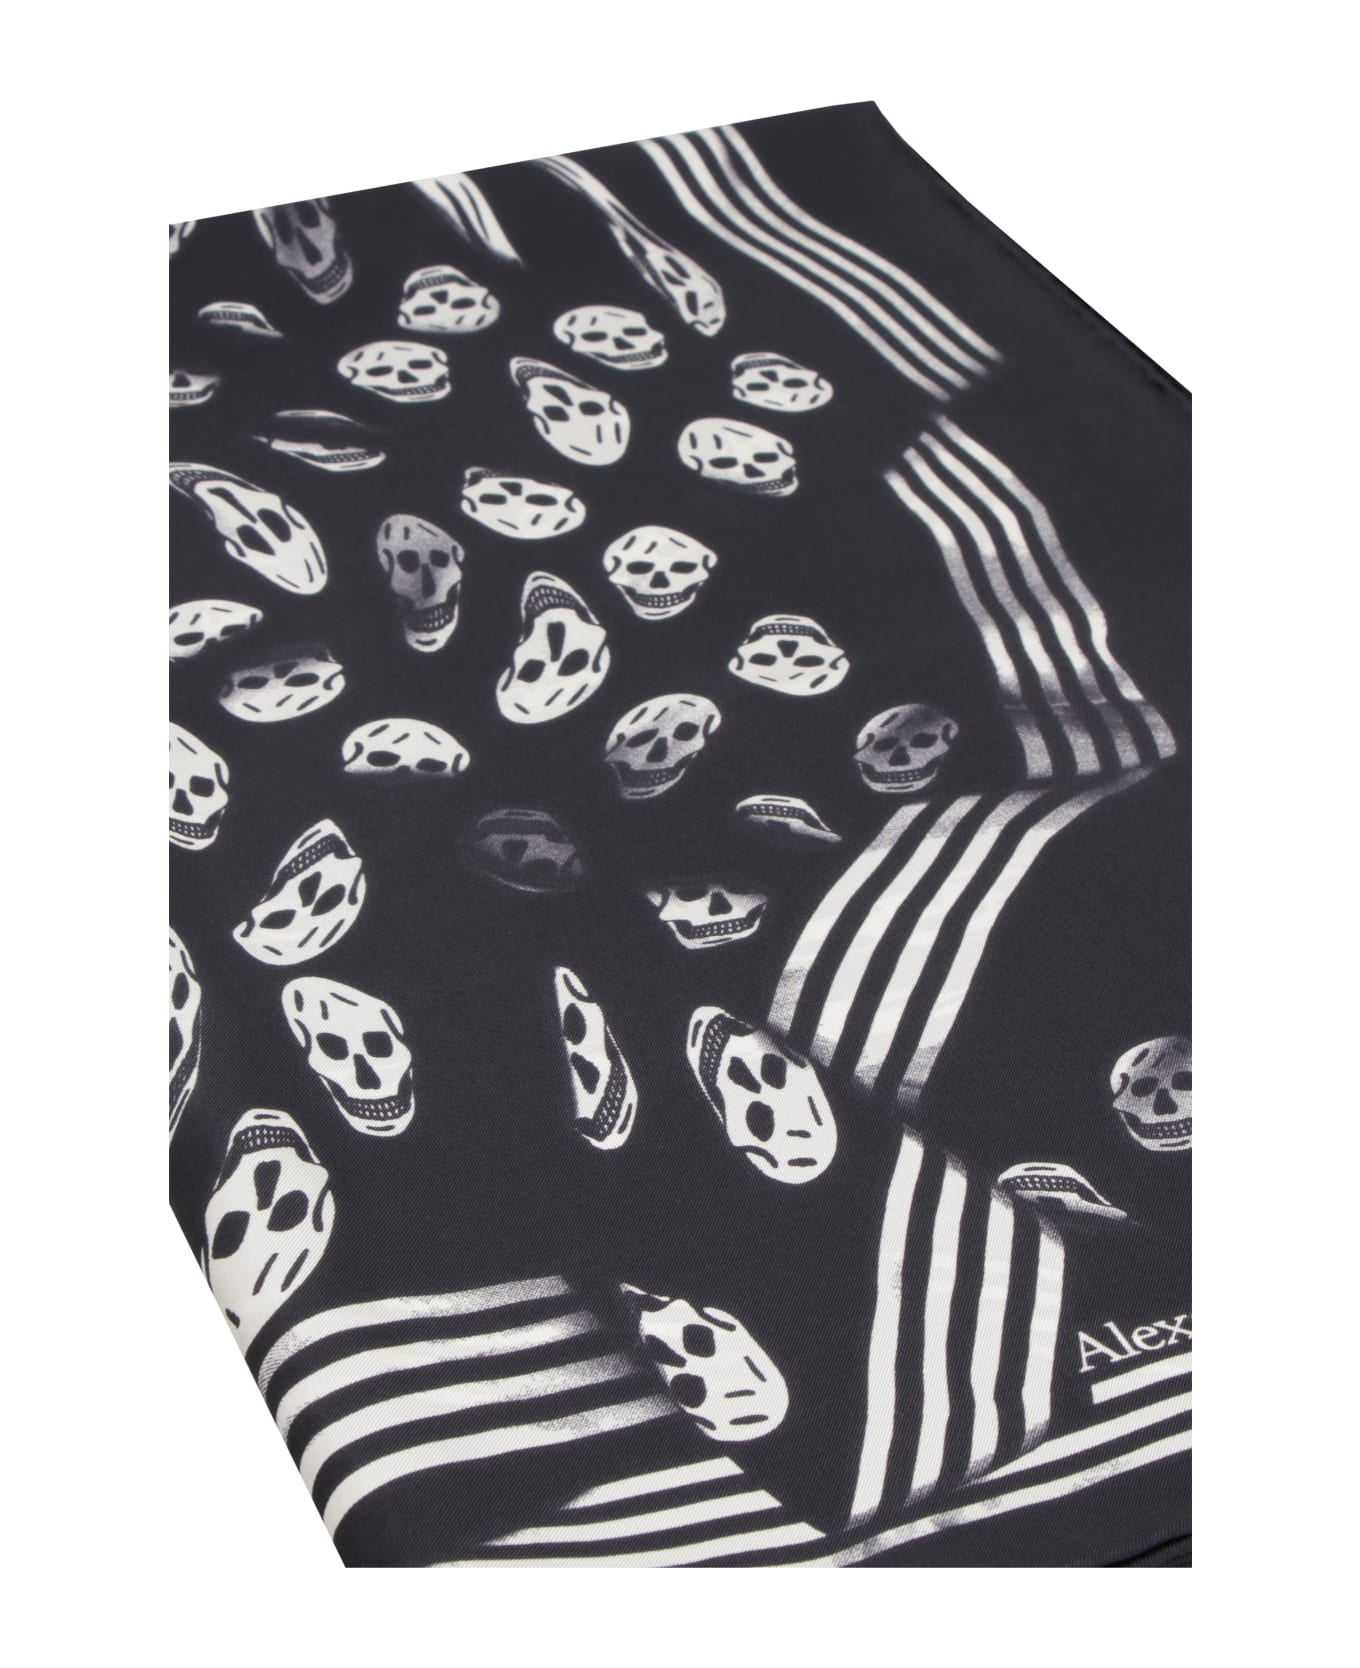 Alexander McQueen Skull Print Scarf - black スカーフ